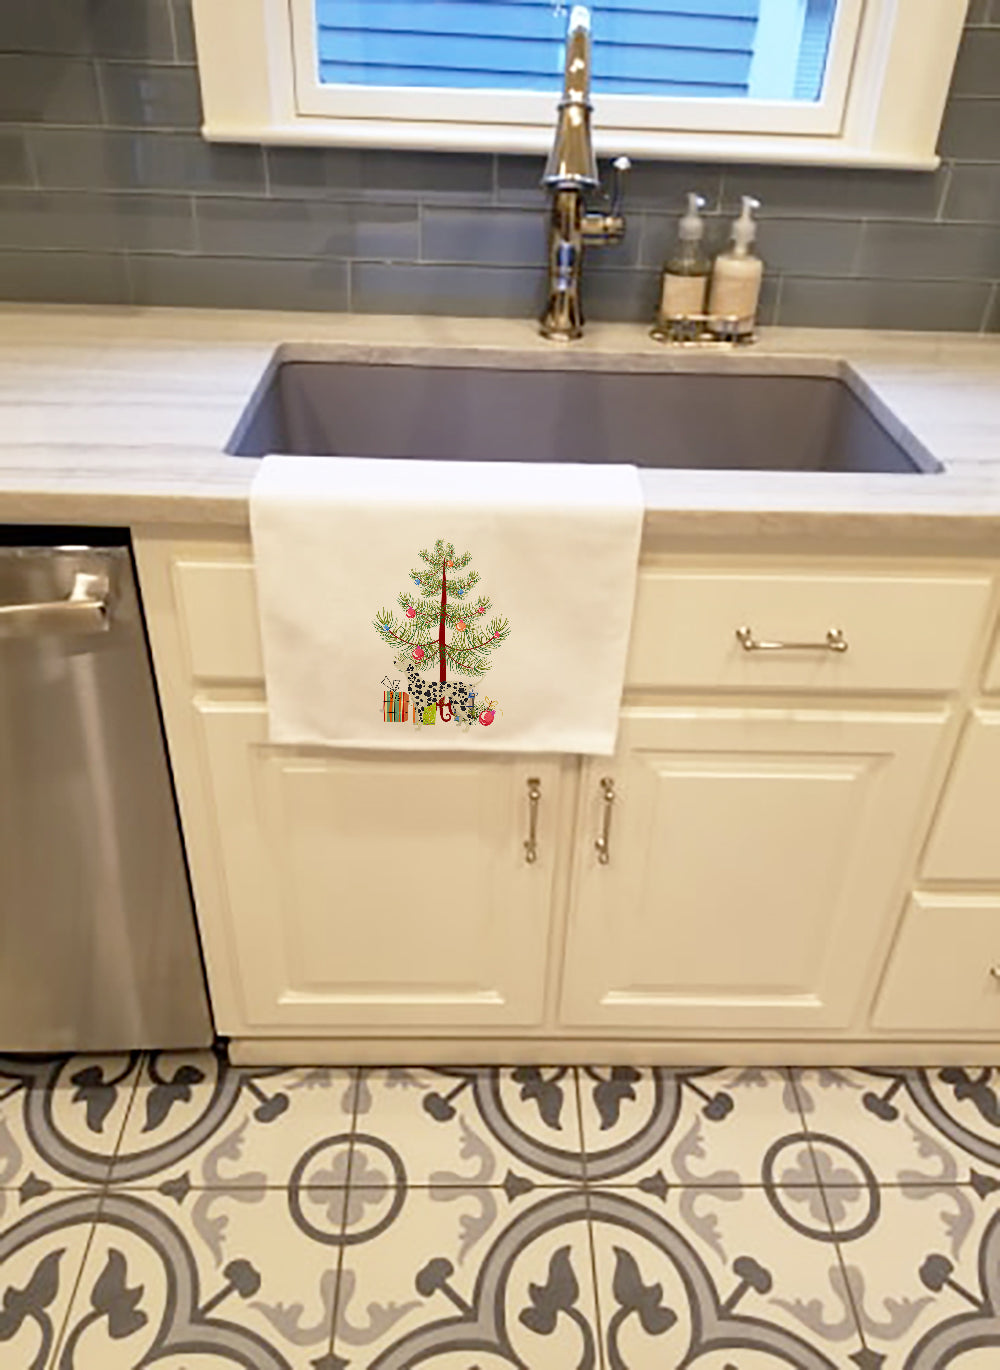 Buy this Dalmatian Christmas Tree White Kitchen Towel Set of 2